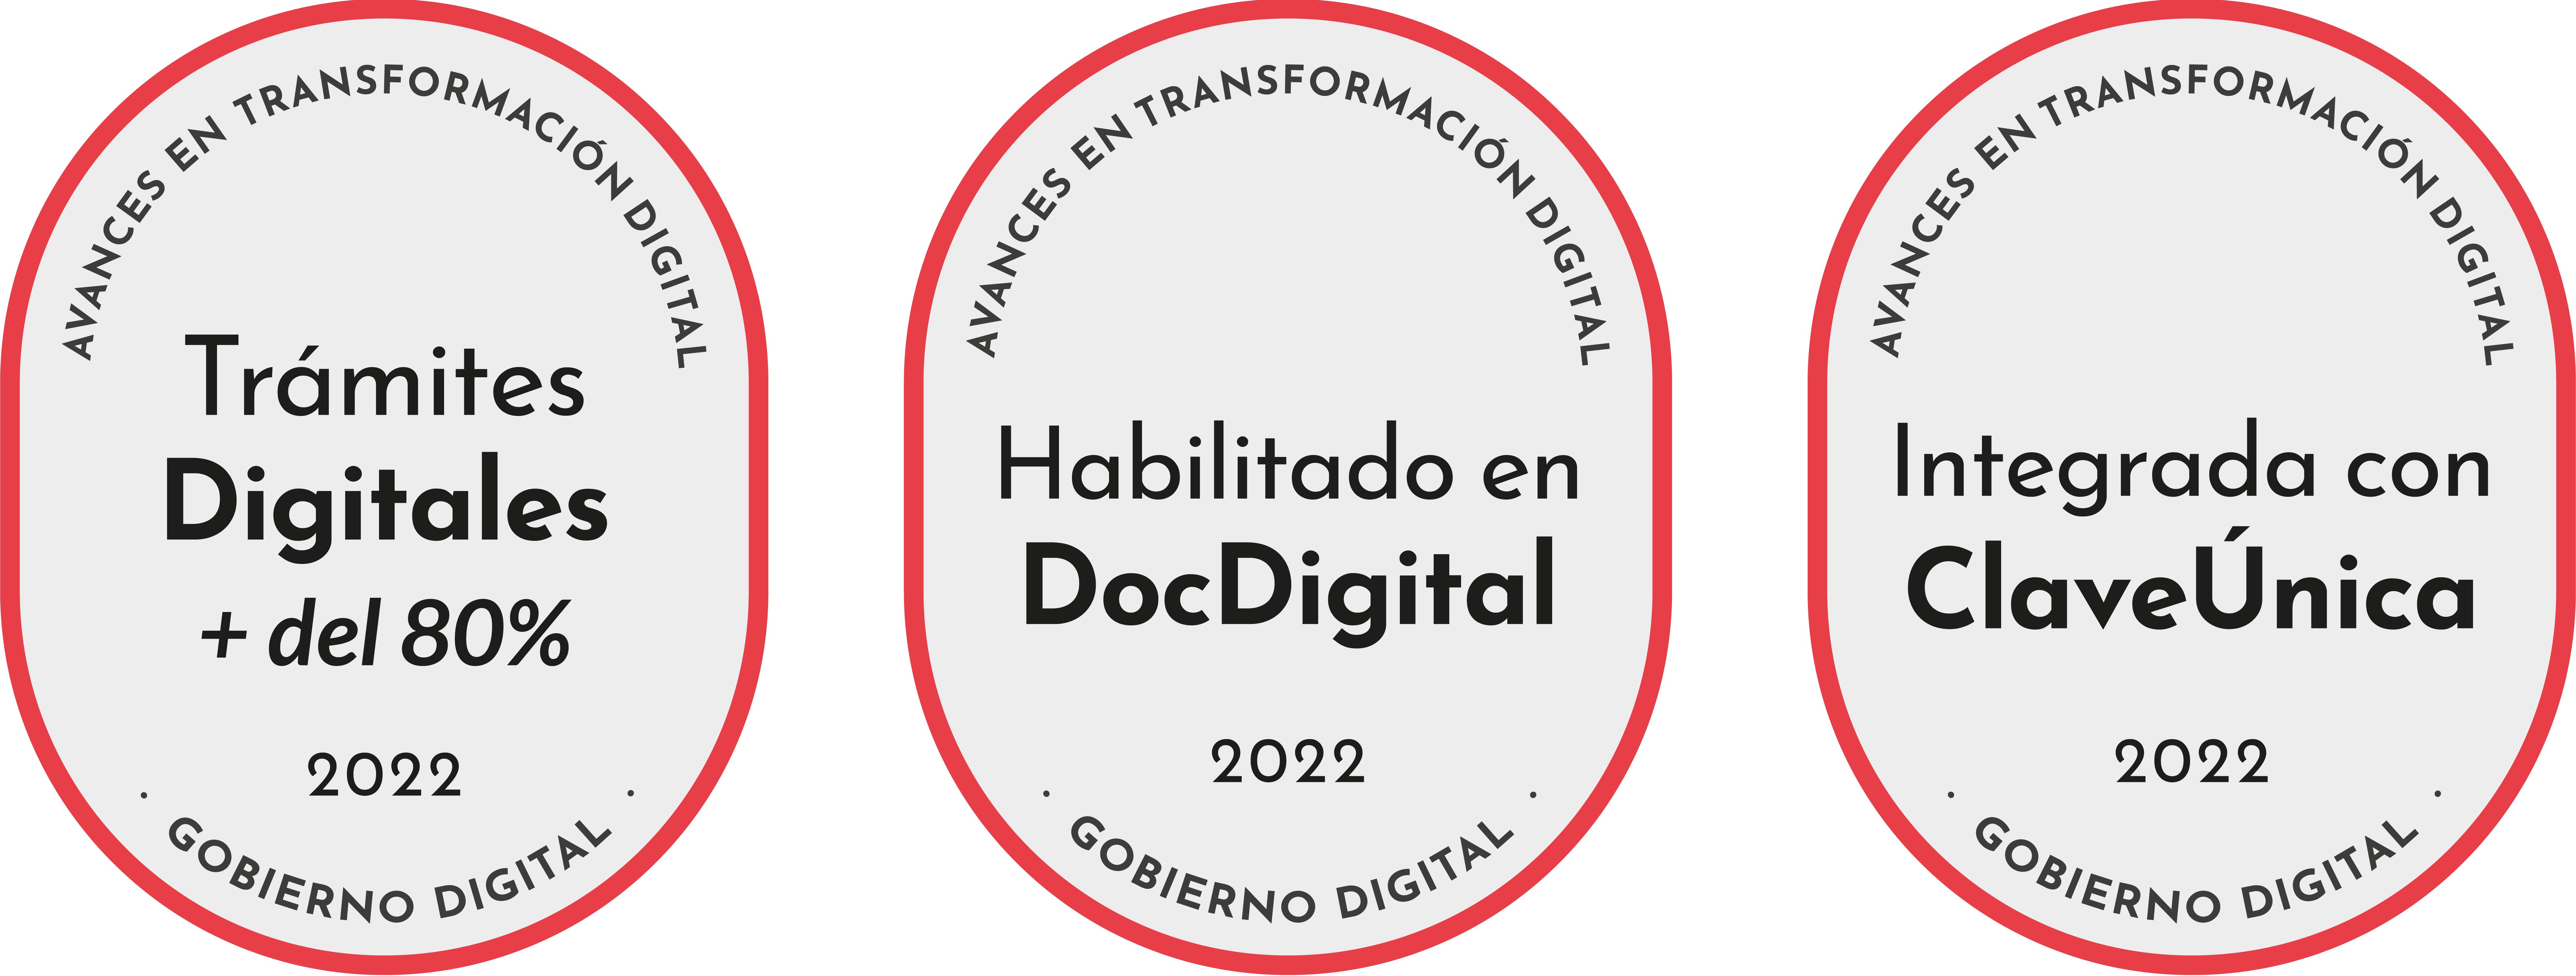 Sellos de cumplimiento Ley de Transformación Digital periodo 2019-2022